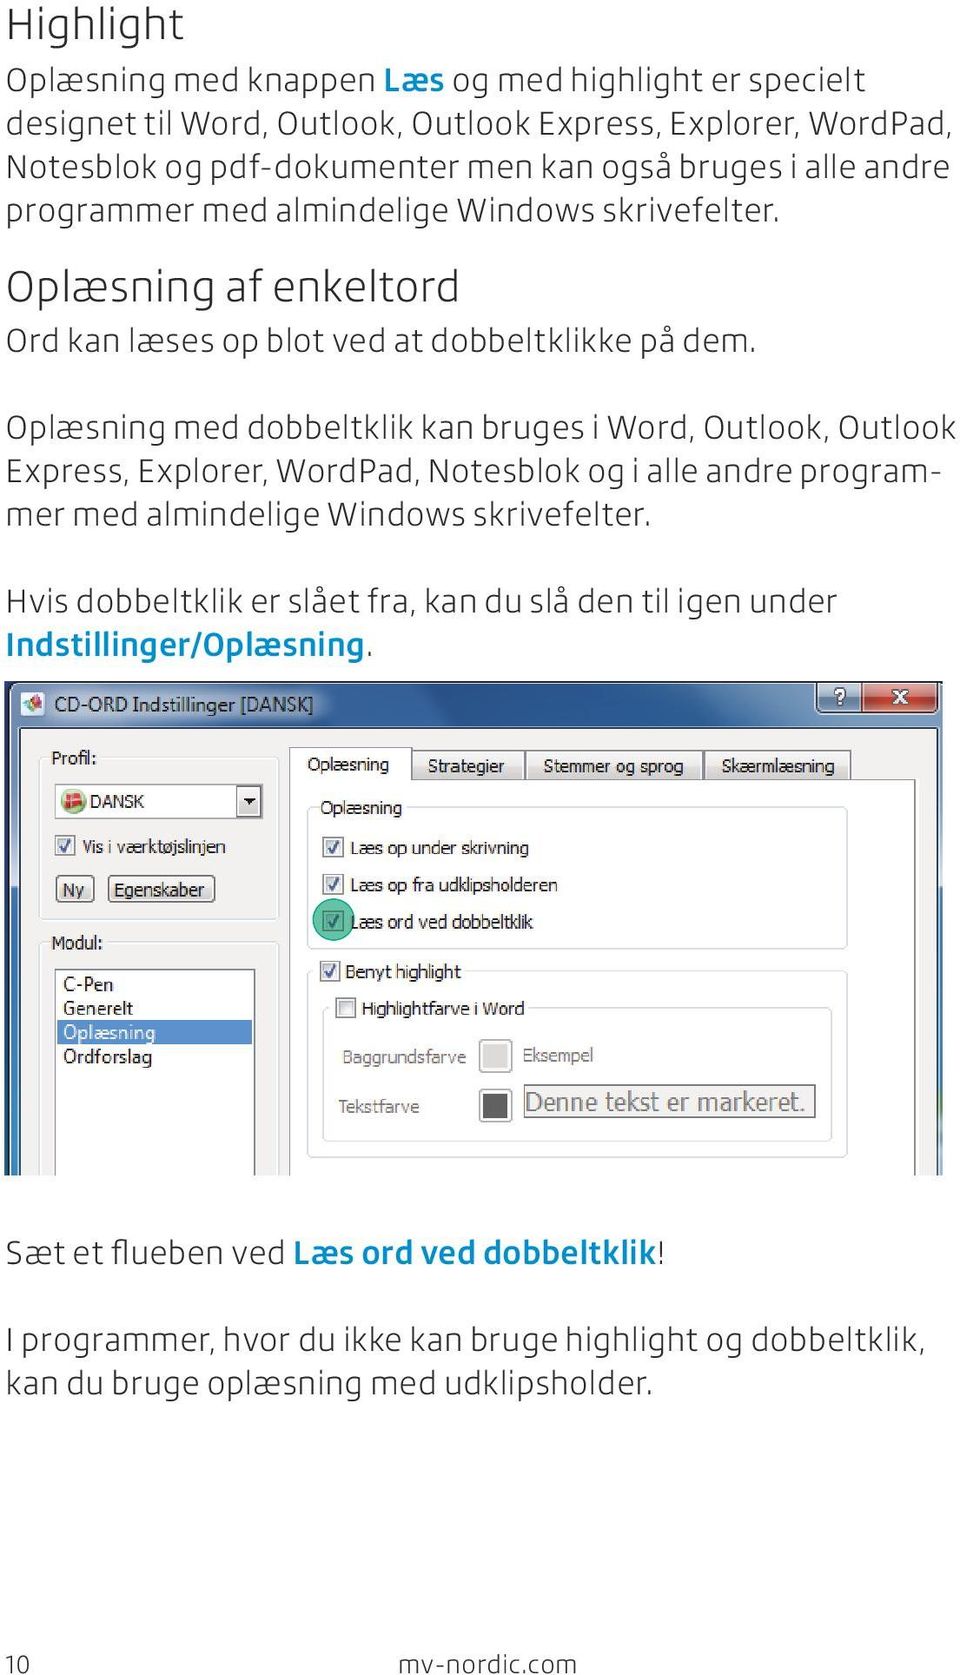 Oplæsning med dobbeltklik kan bruges i Word, Outlook, Outlook Express, Explorer, WordPad, Notesblok og i alle andre programmer med almindelige Windows skrivefelter.